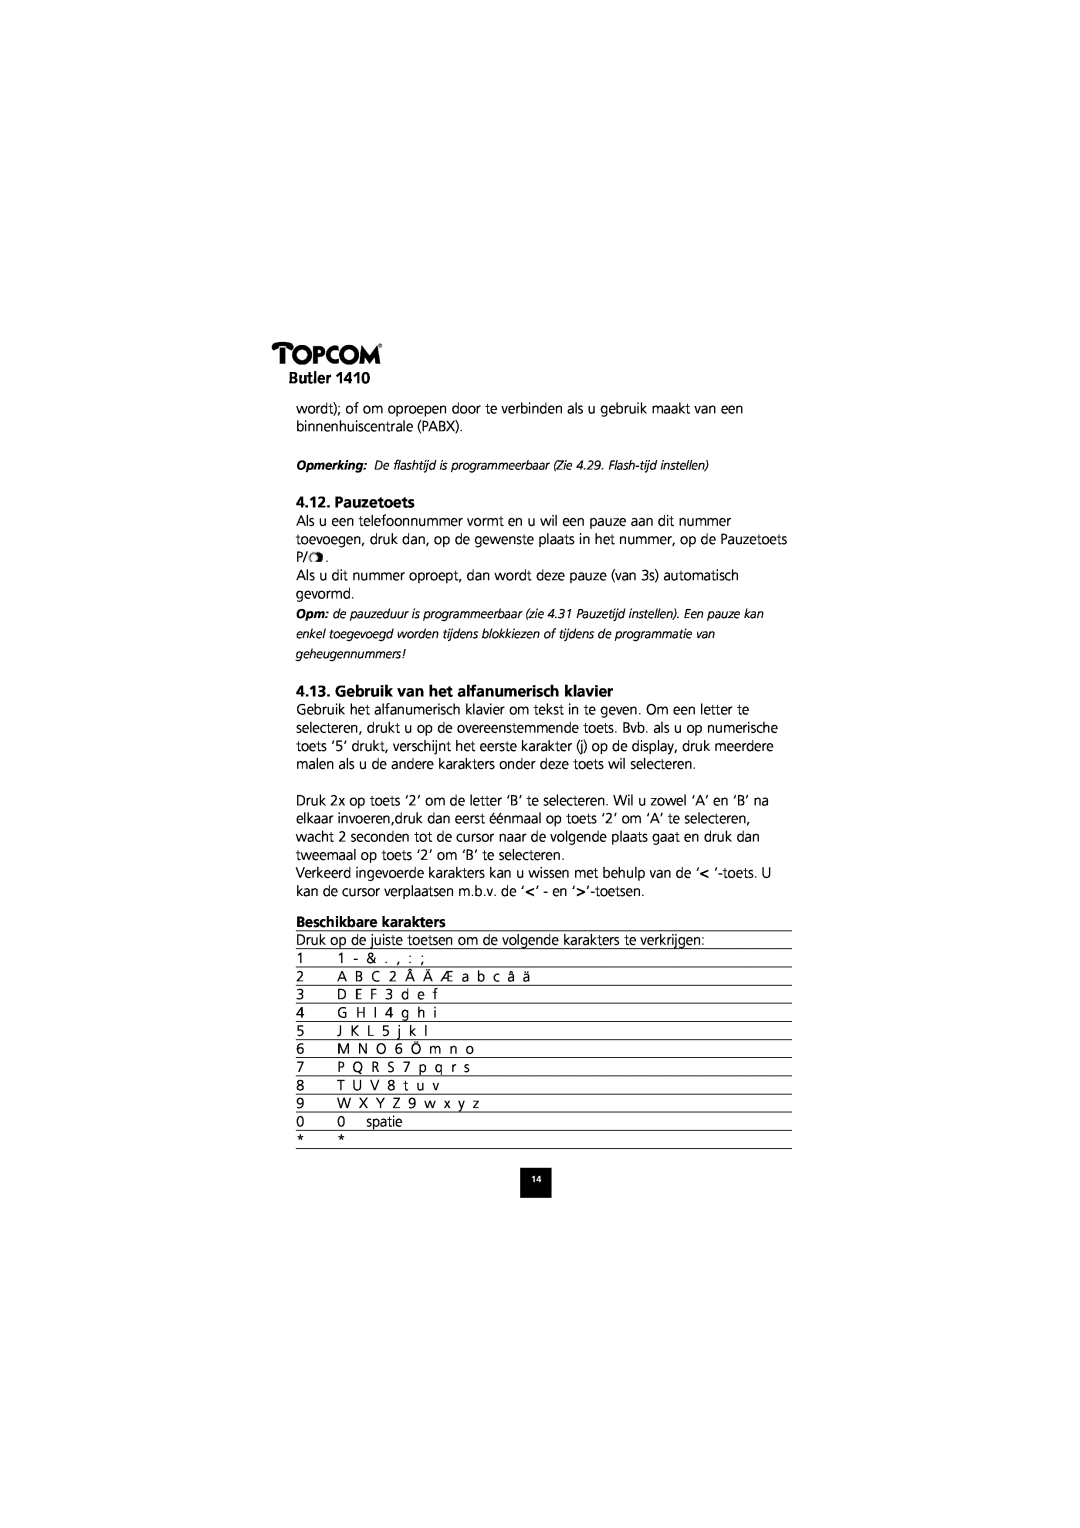 Topcom 1410 manual Pauzetoets, Gebruik van het alfanumerisch klavier, Beschikbare karakters, Butler 